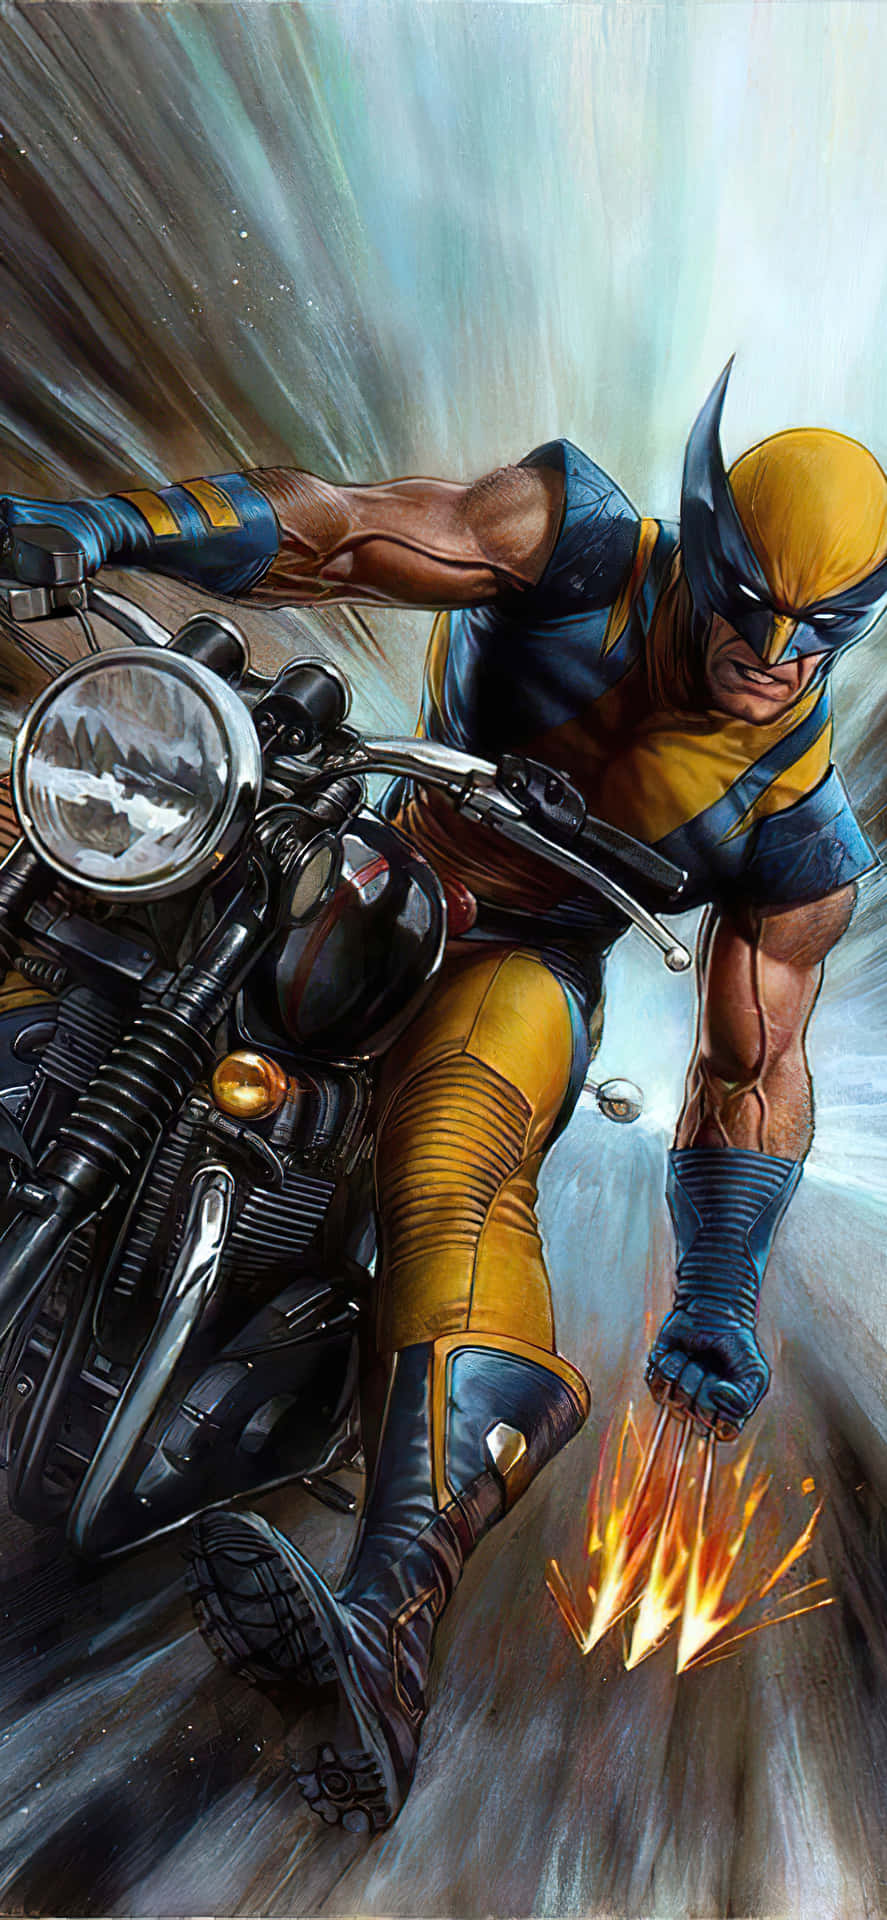 Tapetmed Wolverines Motorcykeltur Marvel-konst För Iphone. Wallpaper